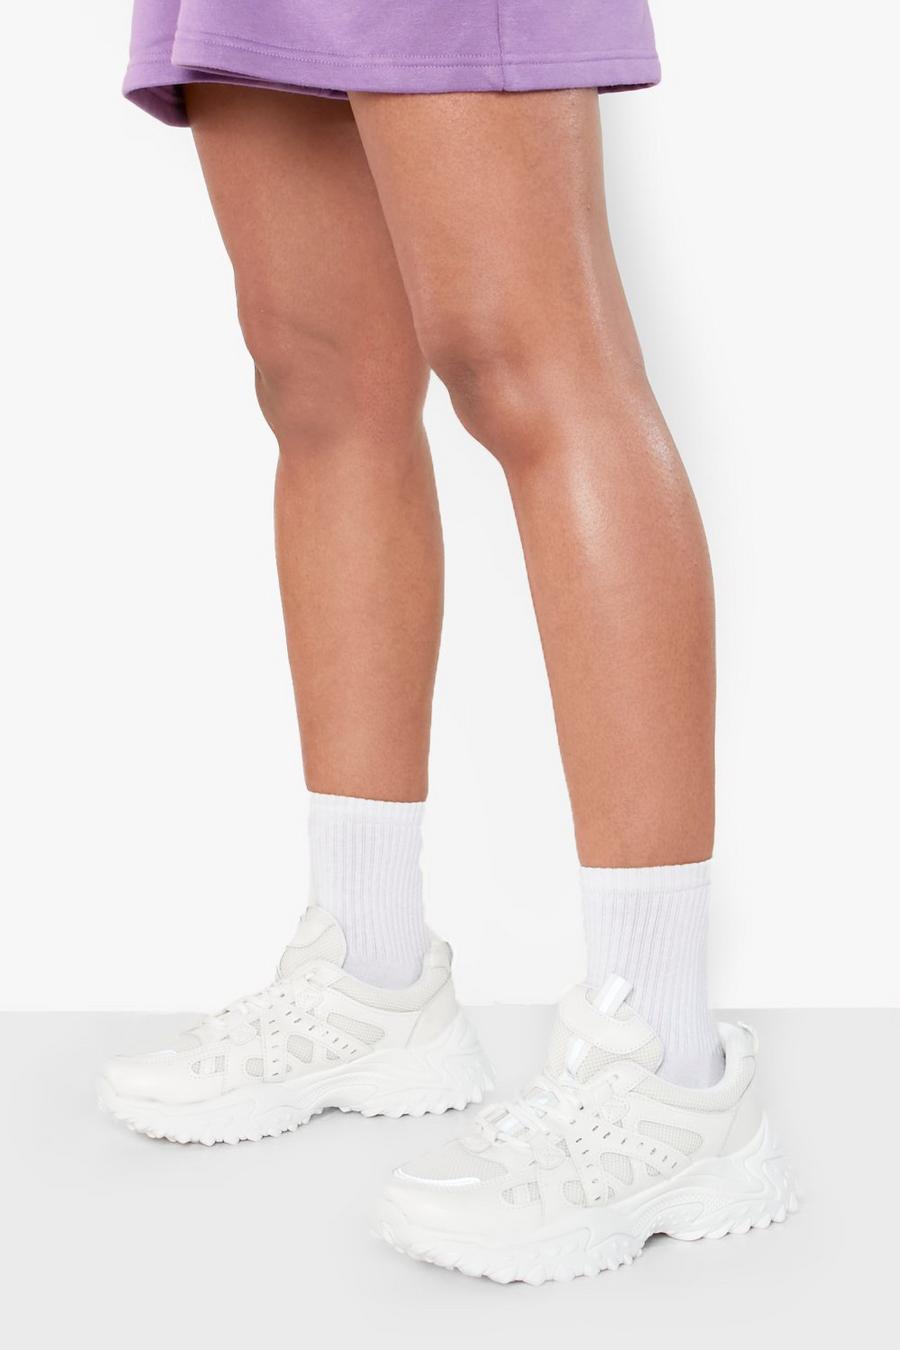 Zapatillas deportivas con suela gruesa y etiqueta, White blanco